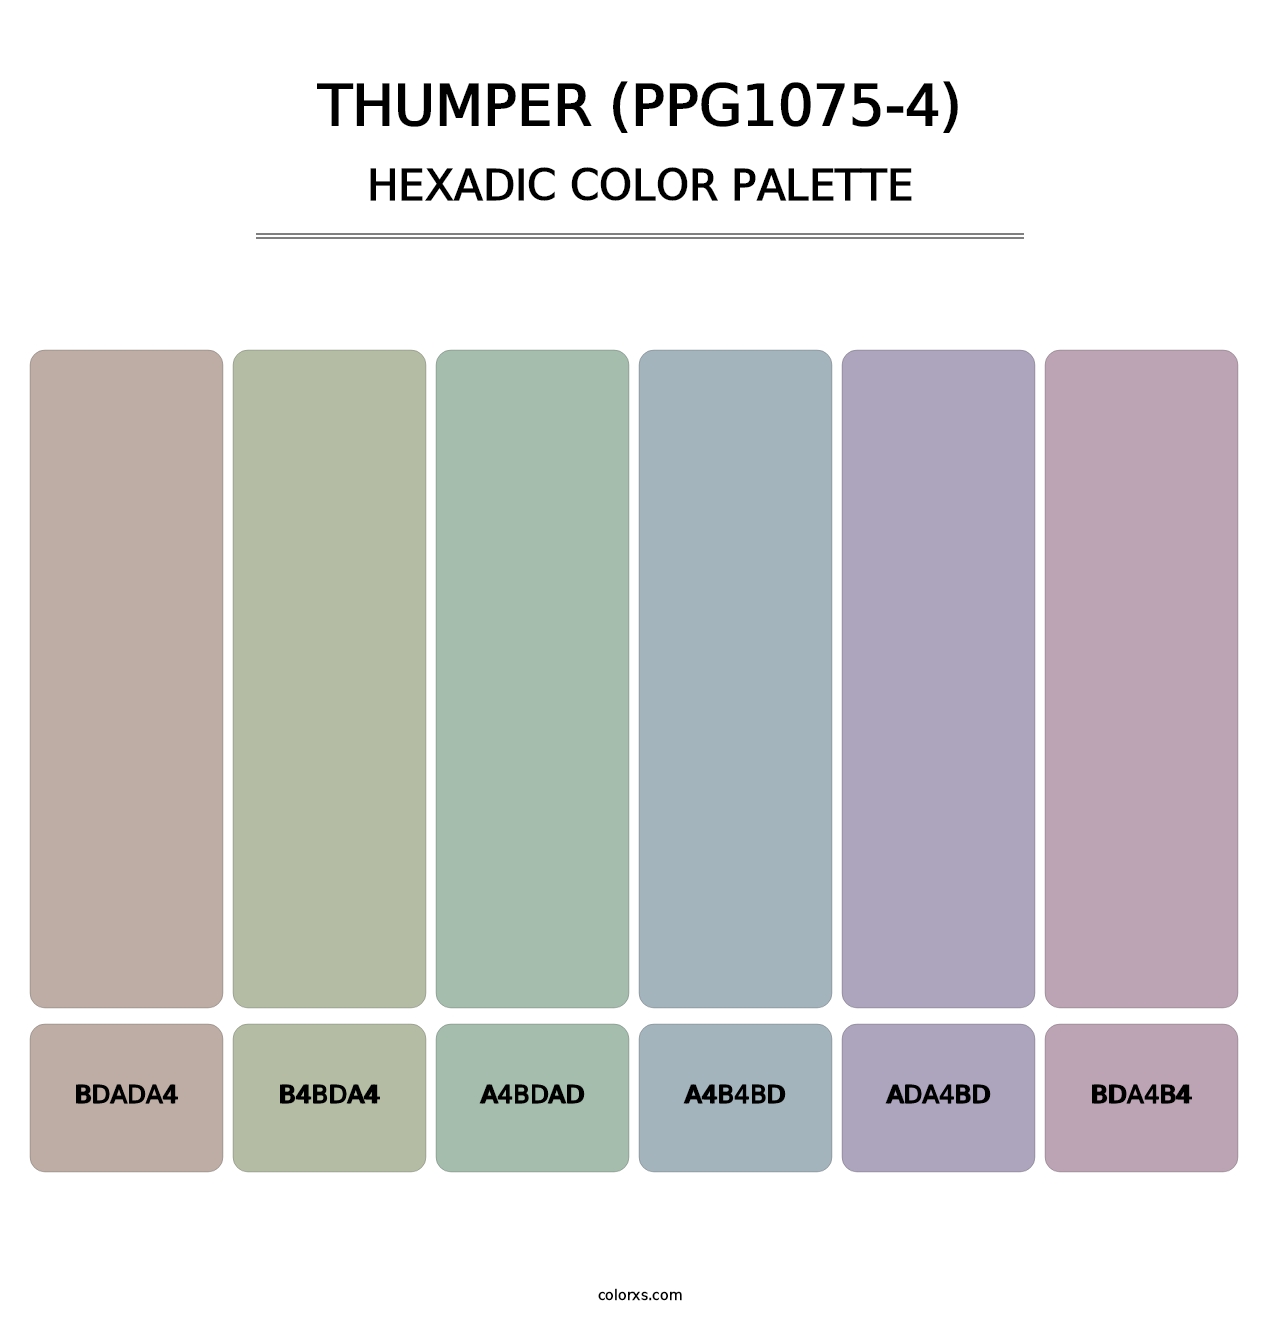 Thumper (PPG1075-4) - Hexadic Color Palette